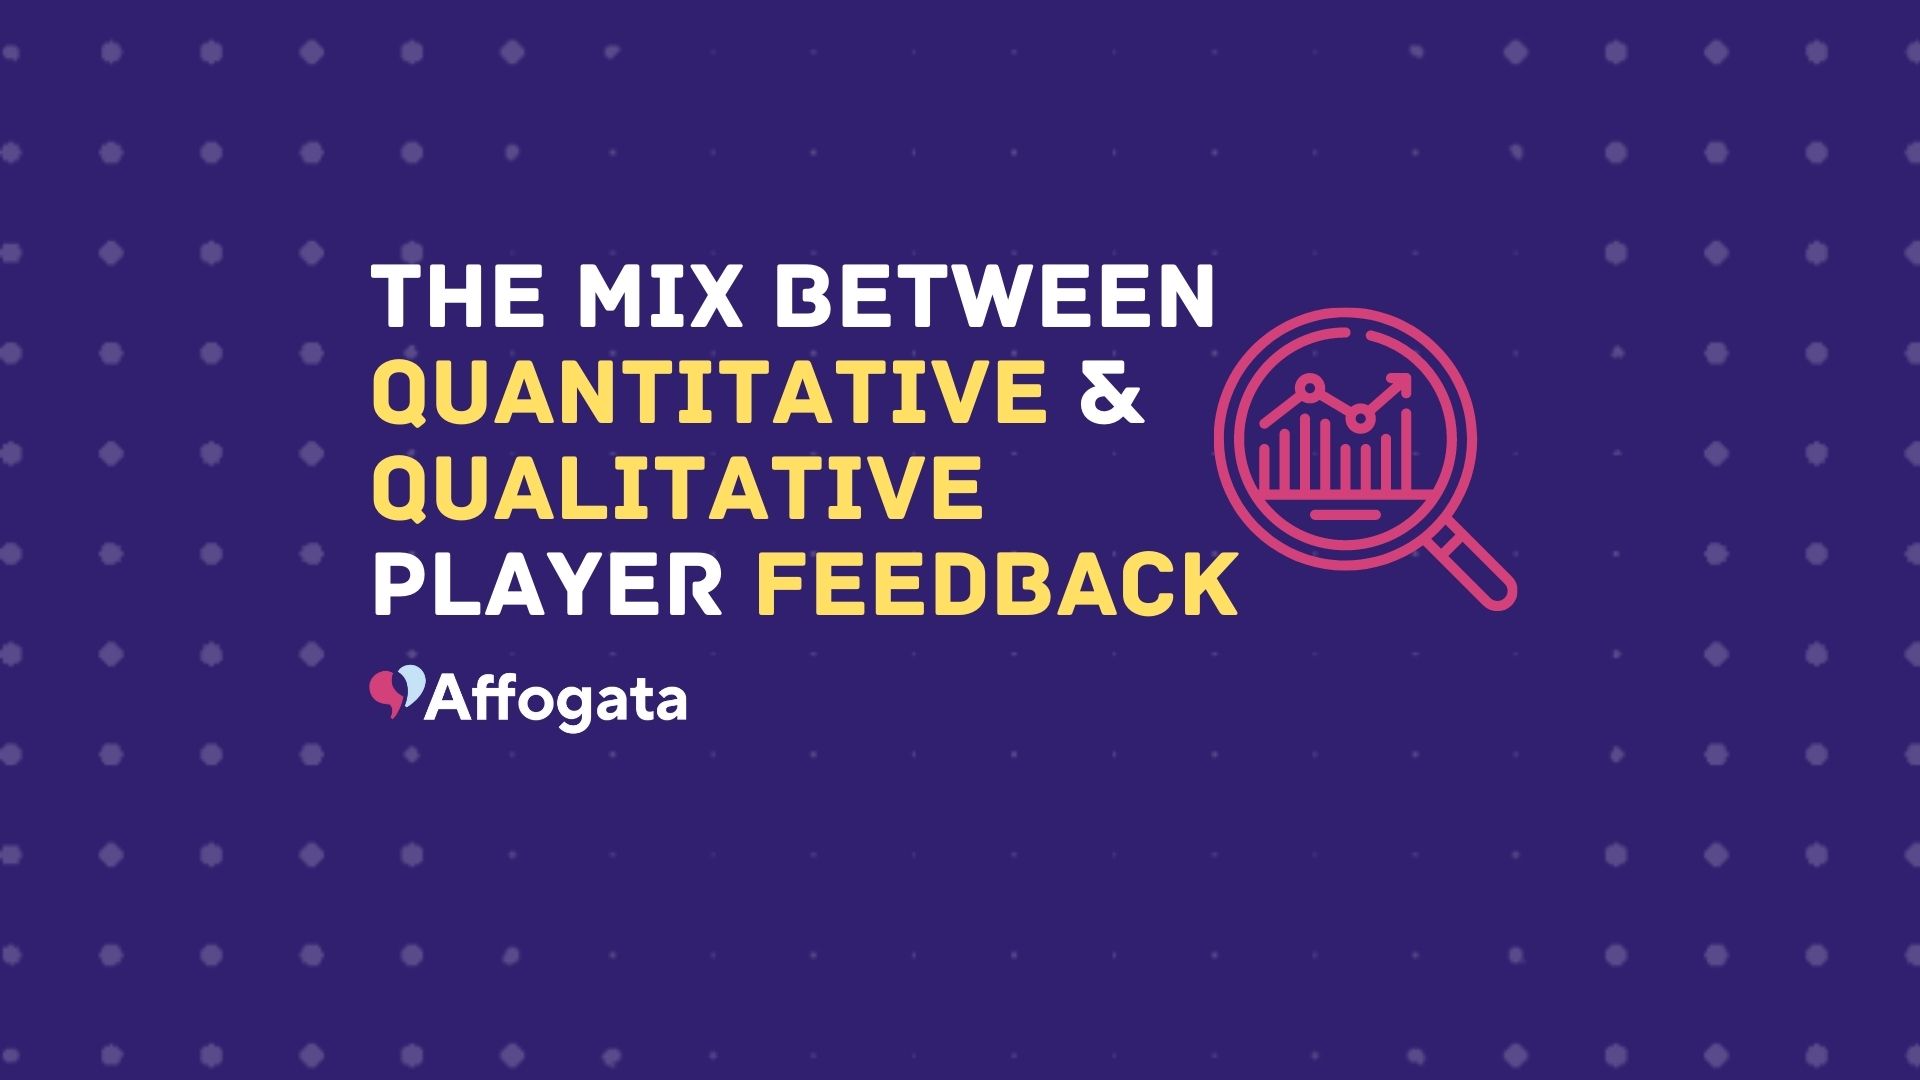 The mix between quantitative and qualitative player feedback